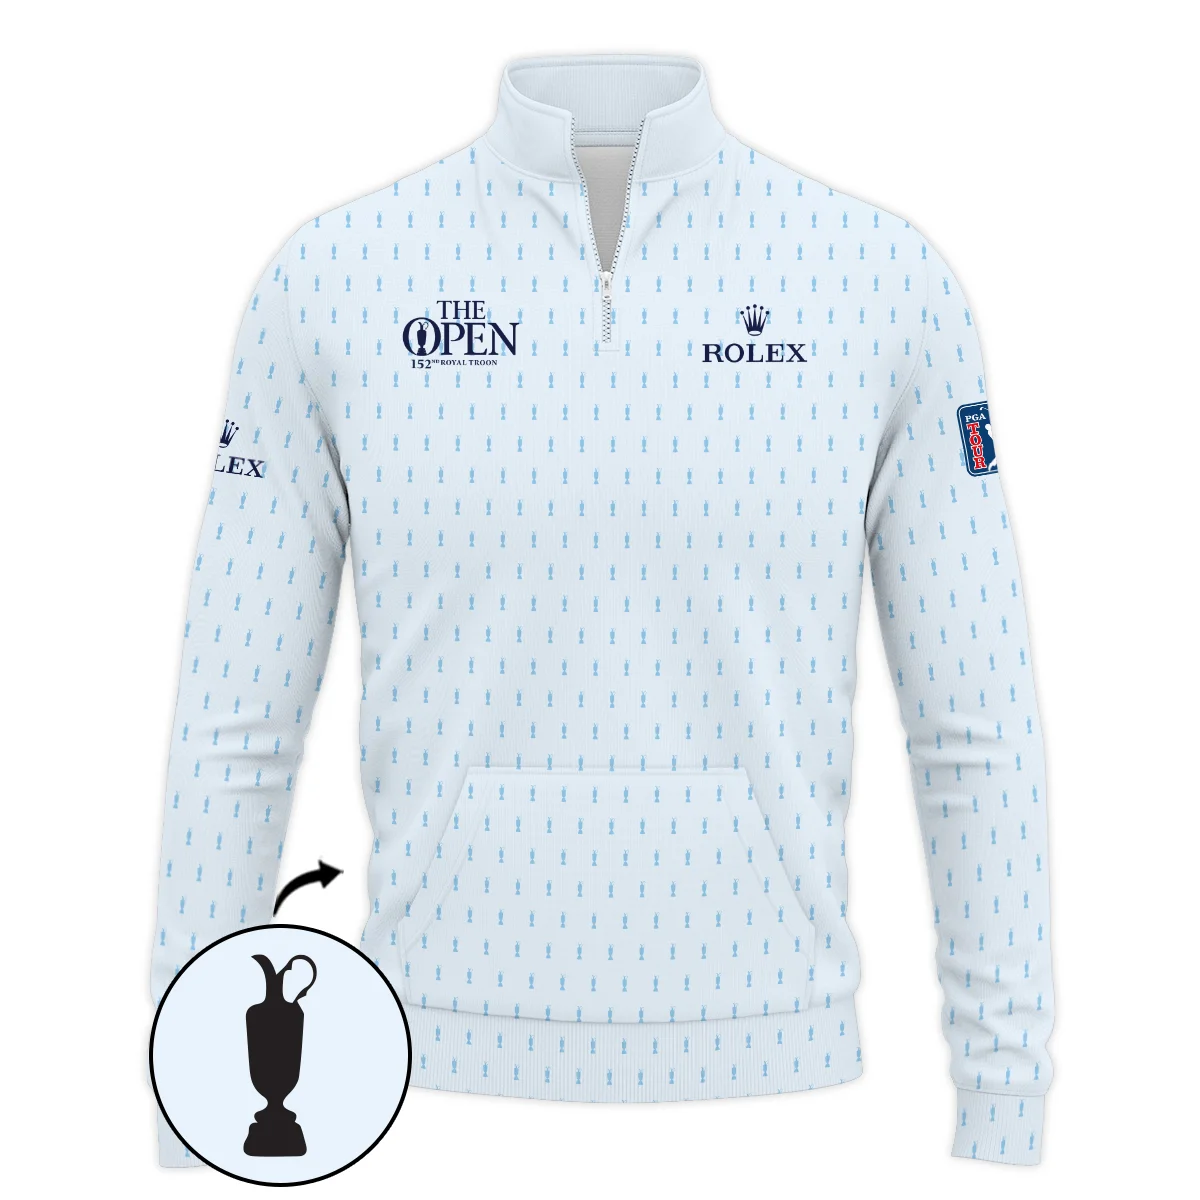 Golf Sport Light Blue Pattern Cup 152nd Open Championship Rolex Zipper Hoodie Shirt All Over Prints QTTOP160624A01ROXZHD